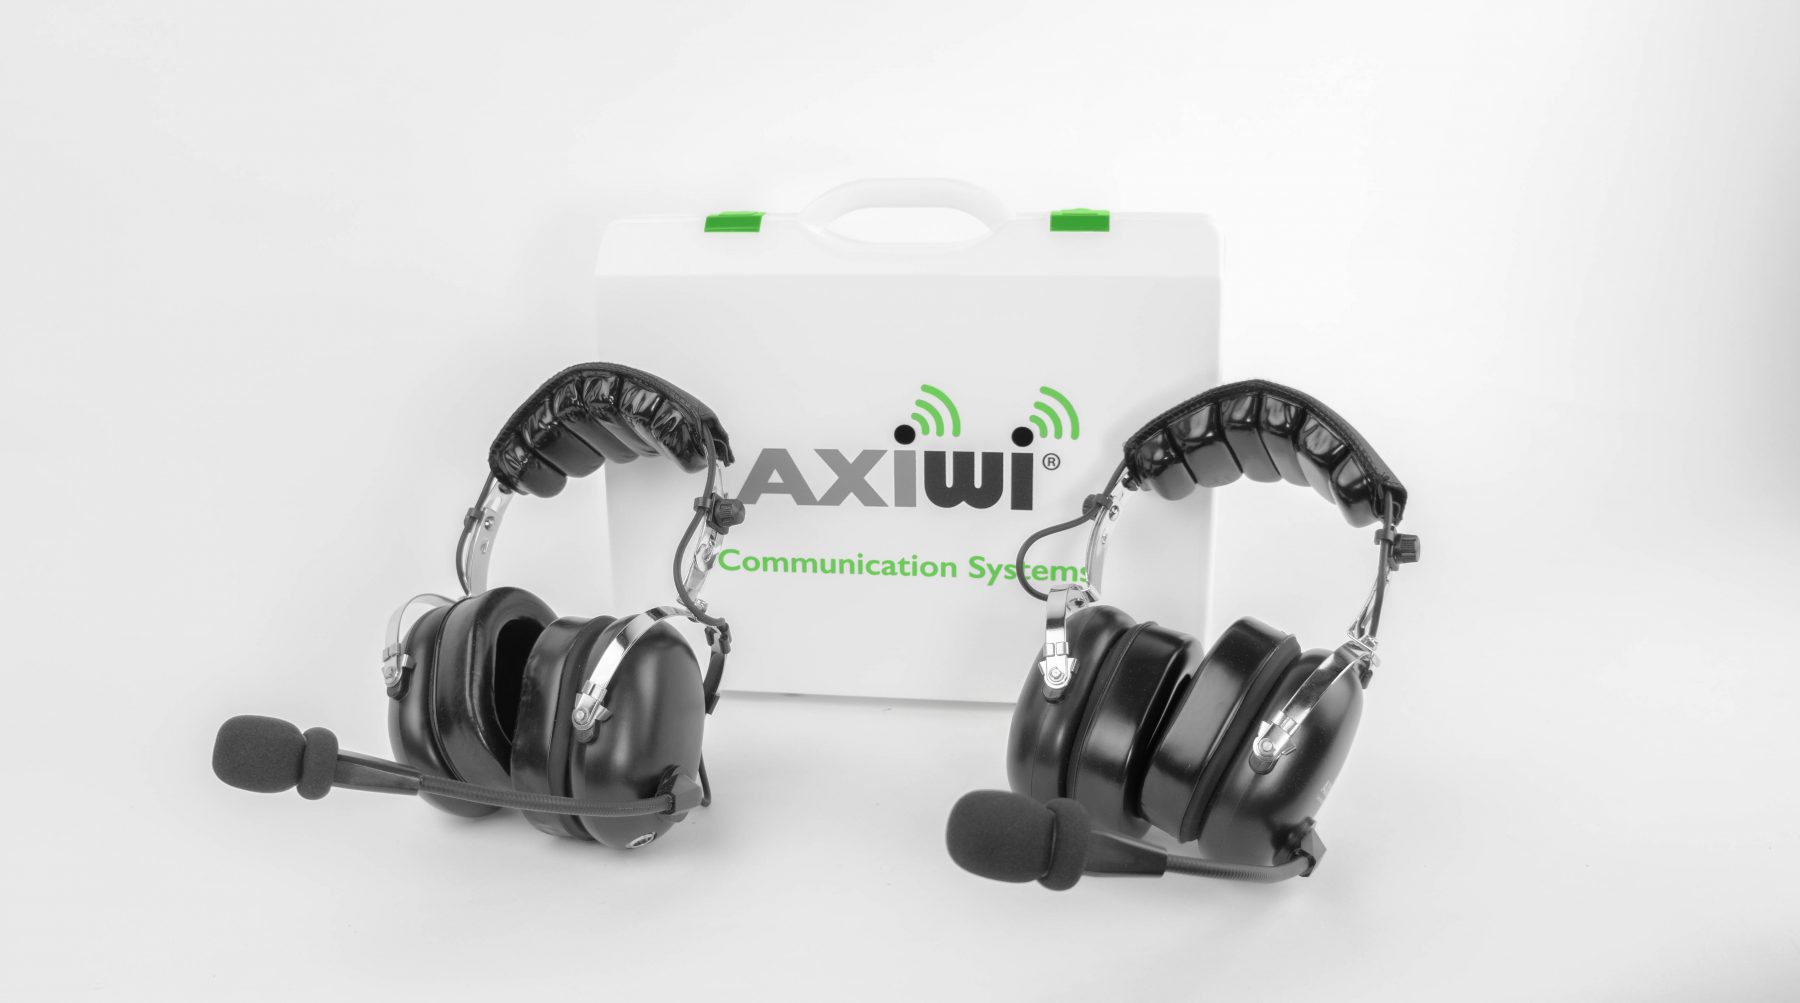 de axiwi headsets van greif gebruikt tijdens rondleiding via conference call op afstand via zoom